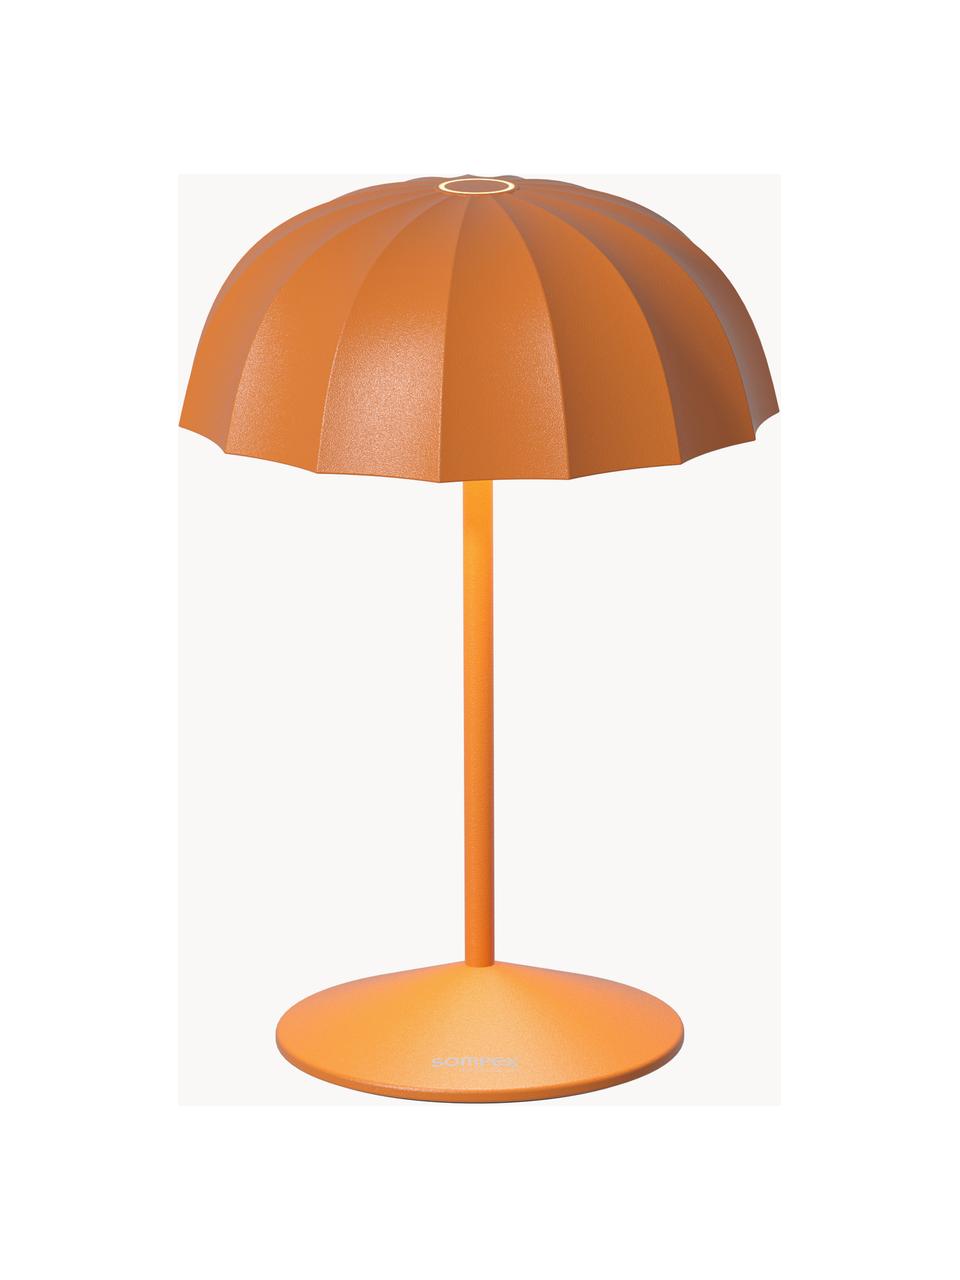 Lampada piccola da esterno portatile a LED con luce regolabile Ombrellino, Lampada: alluminio rivestito, Arancione, Ø 16 x Alt. 23 cm